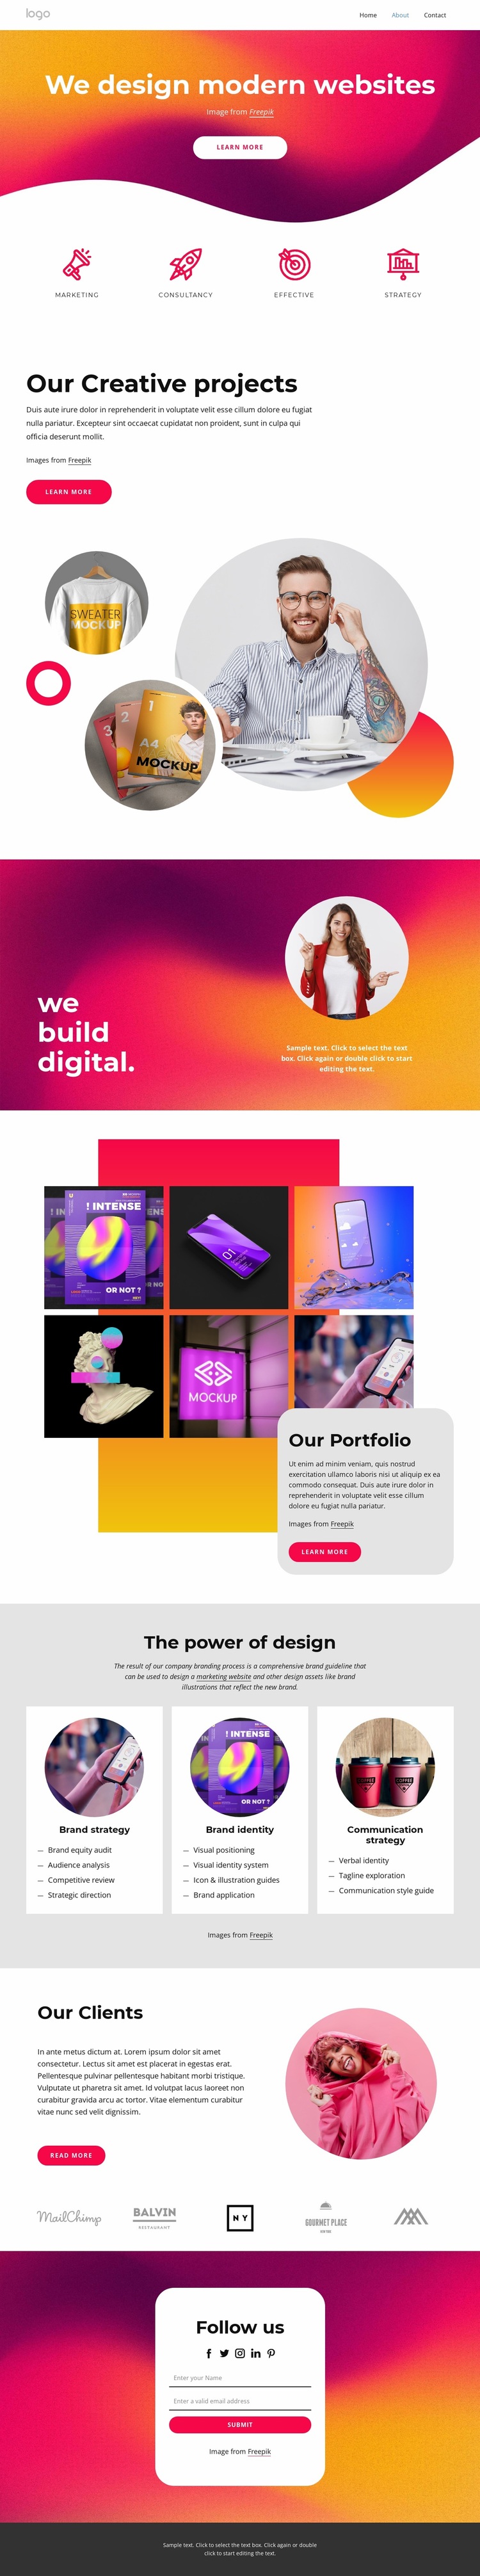 We design modern websites Website Design